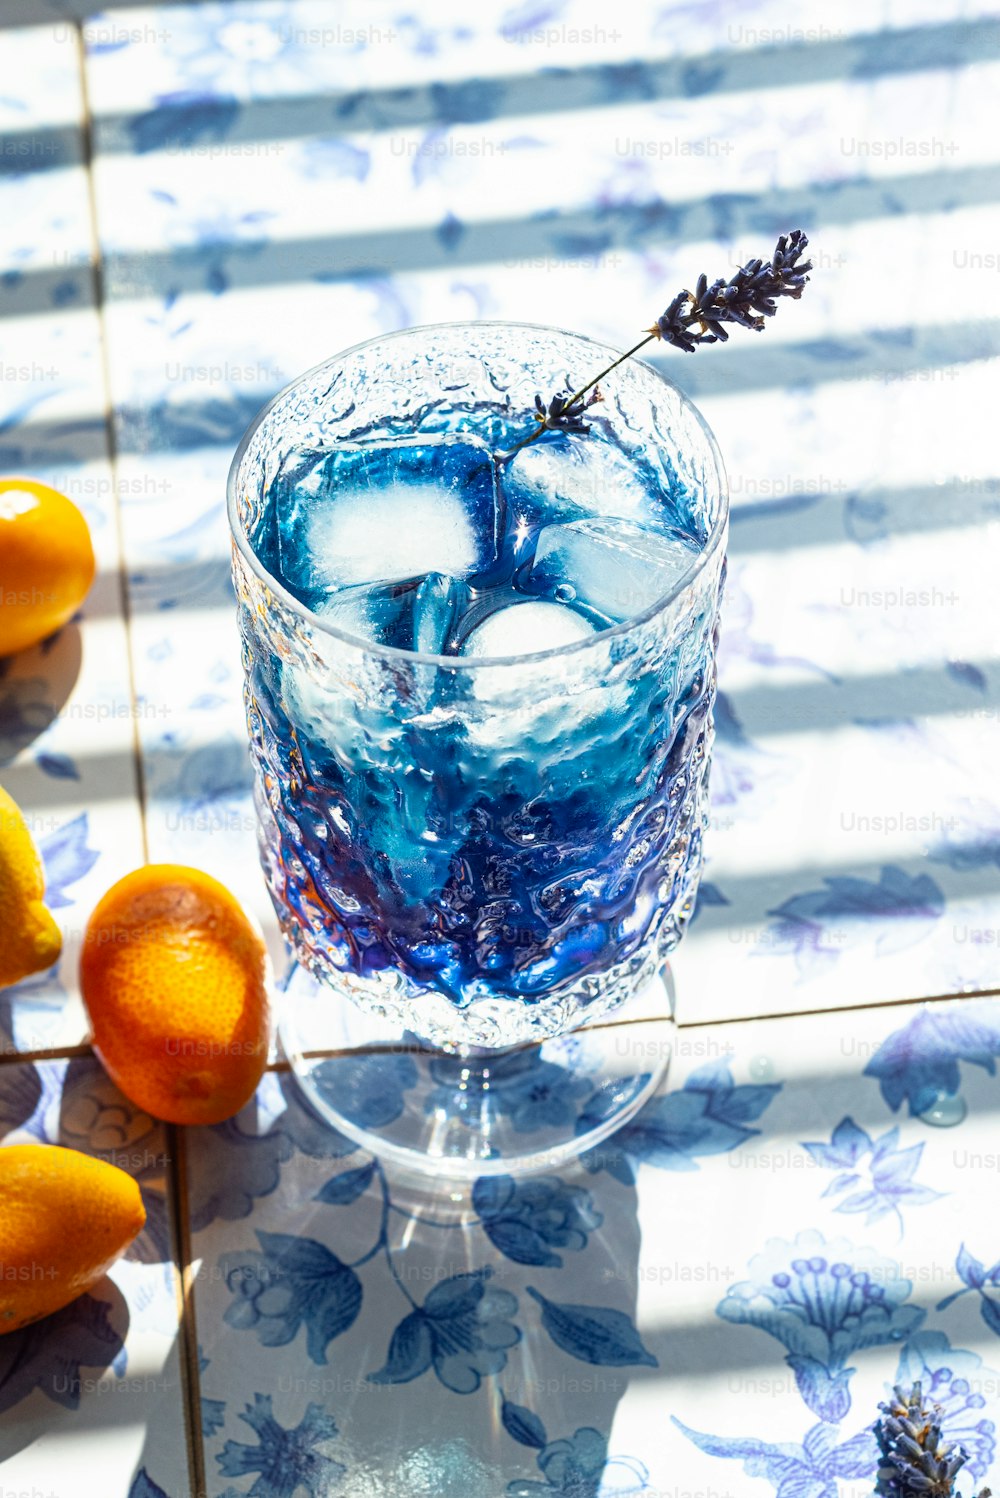 オレンジの隣に青い液体で満たされたグラス